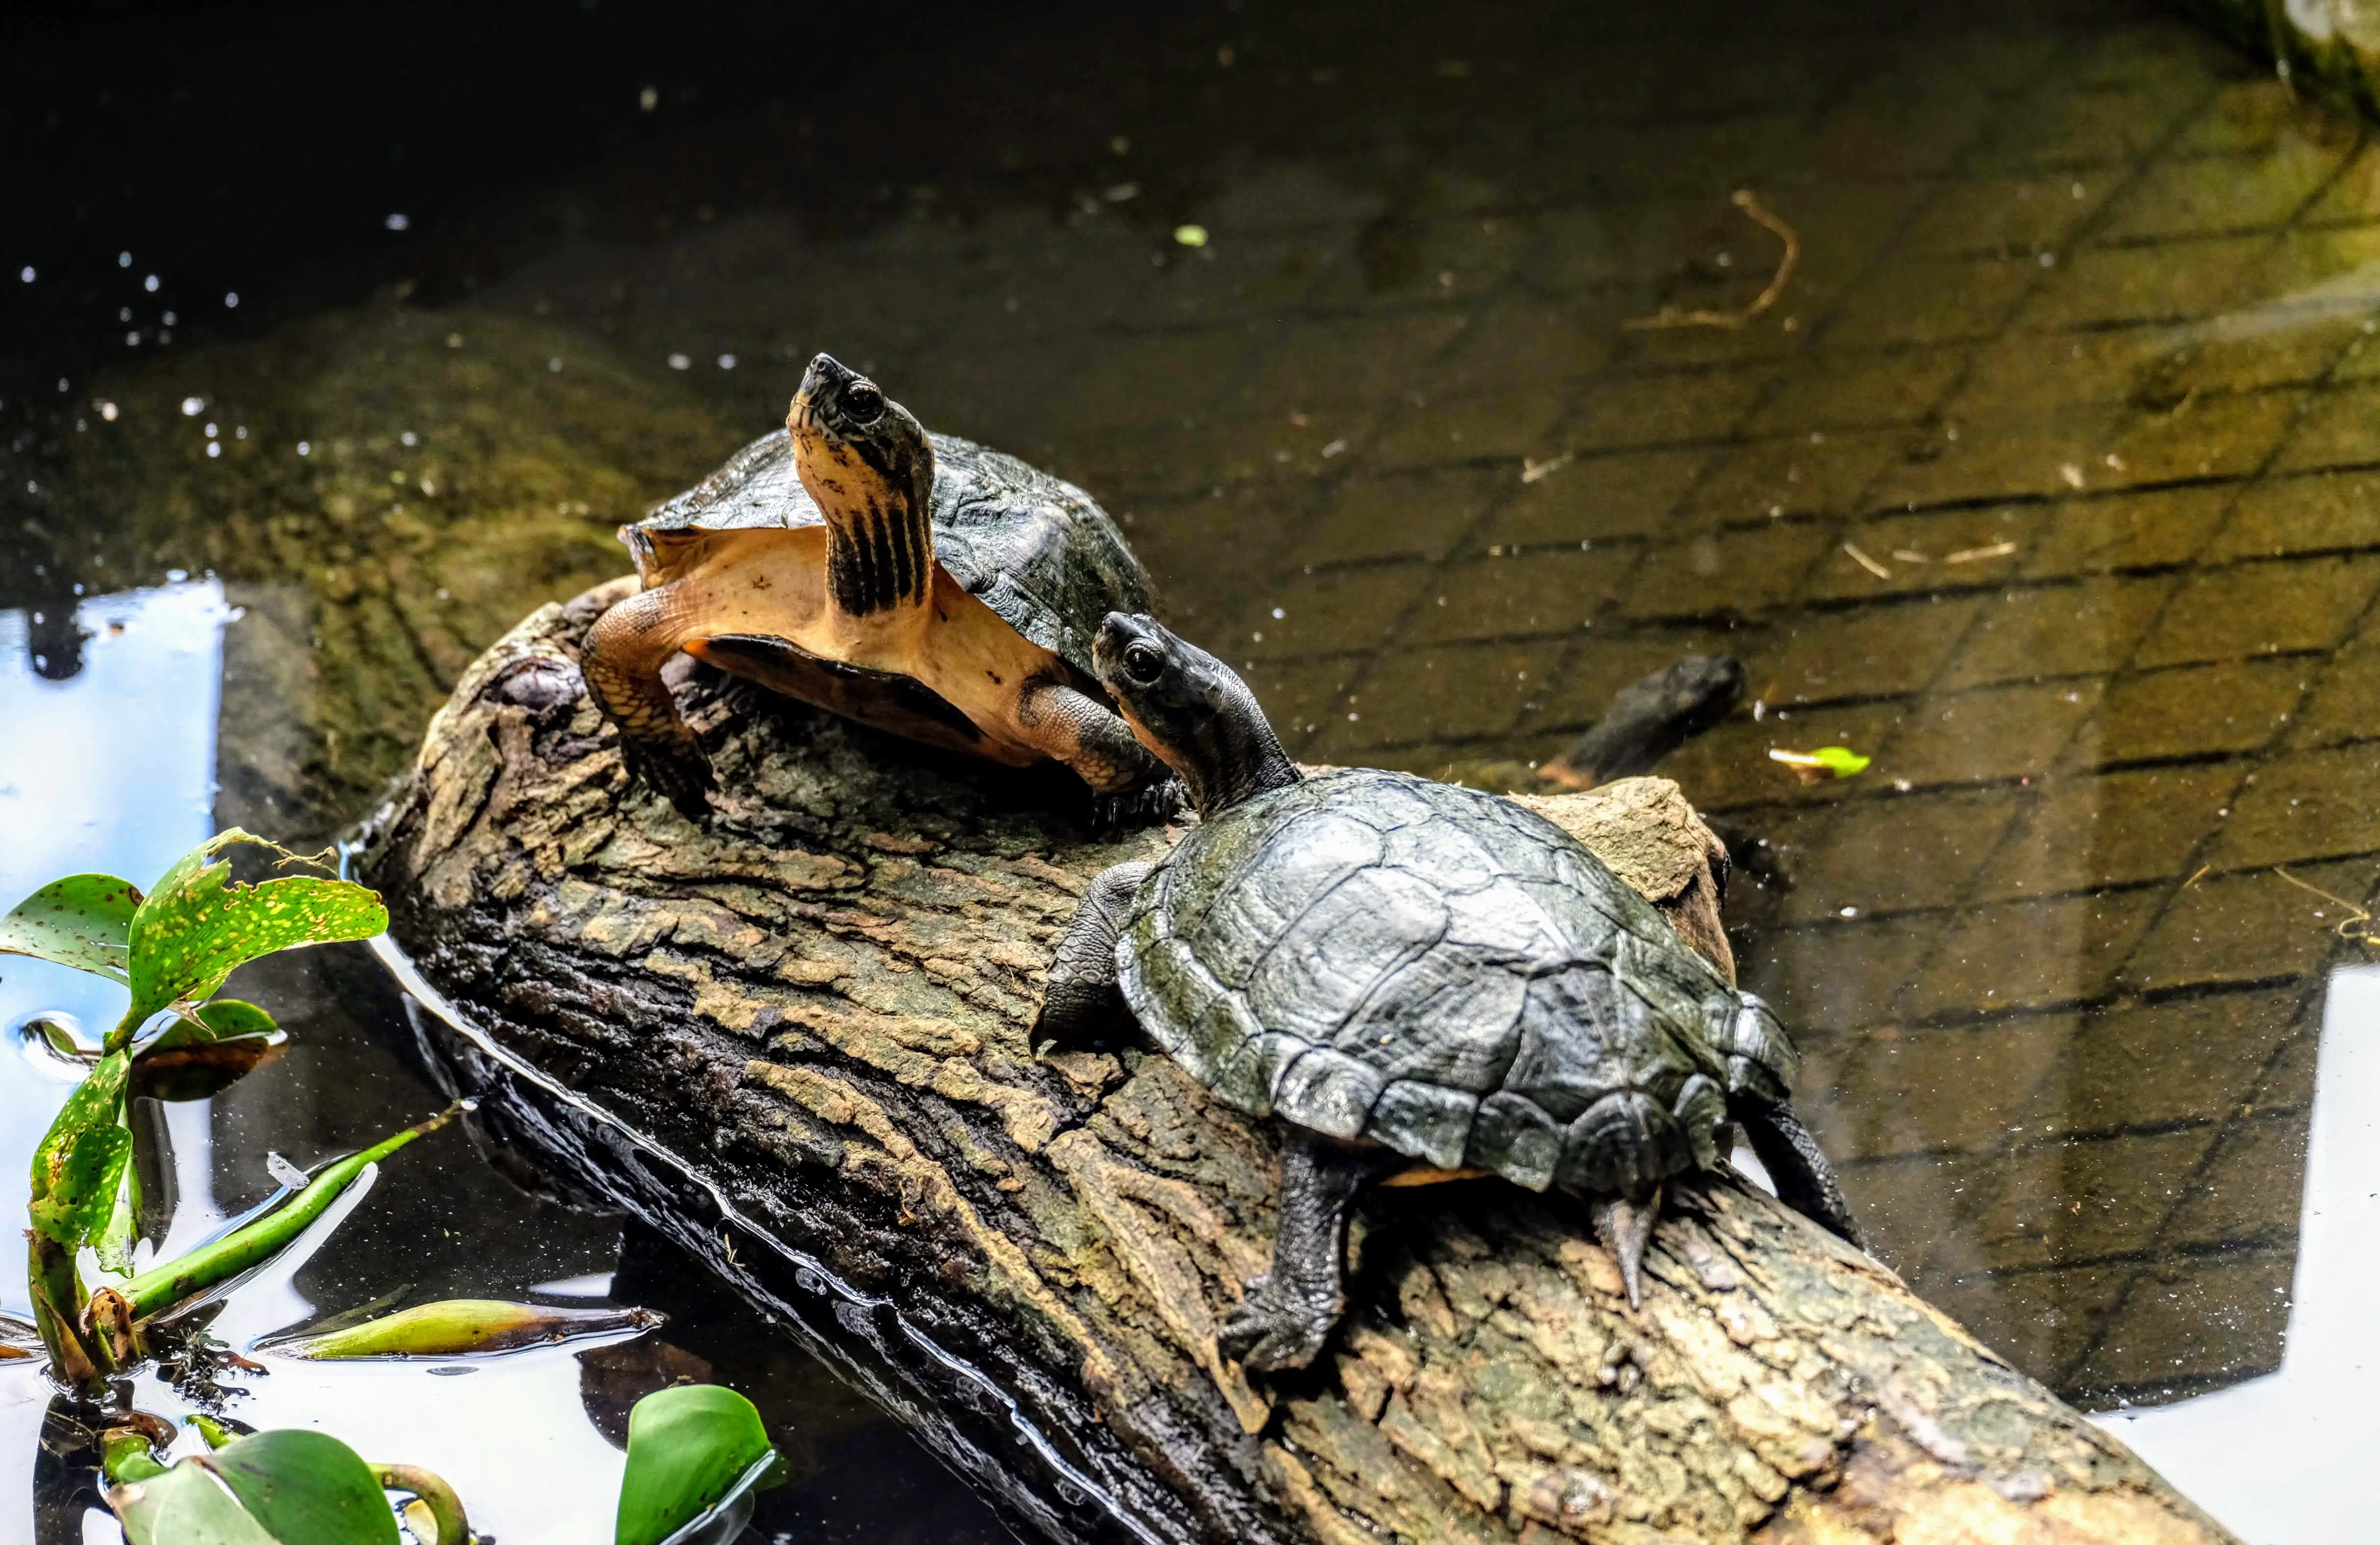 Turtle Conservation Centre, Cuc Phuong National Park, Vietnam